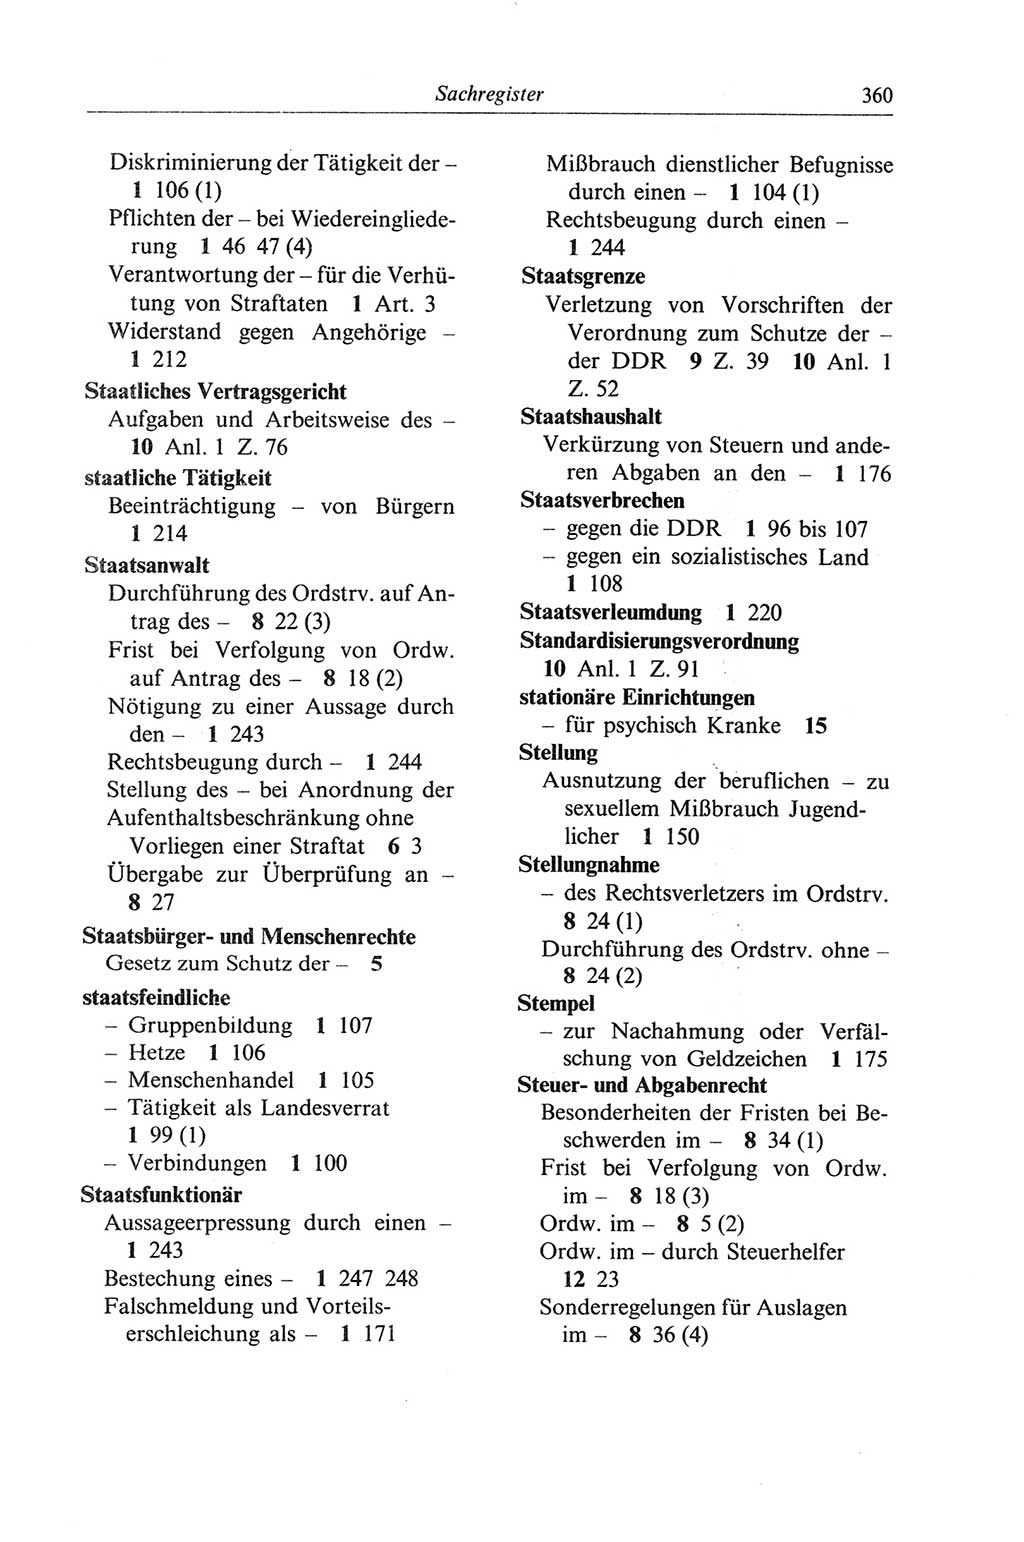 Strafgesetzbuch (StGB) der Deutschen Demokratischen Republik (DDR) und angrenzende Gesetze und Bestimmungen 1968, Seite 360 (StGB Ges. Best. DDR 1968, S. 360)